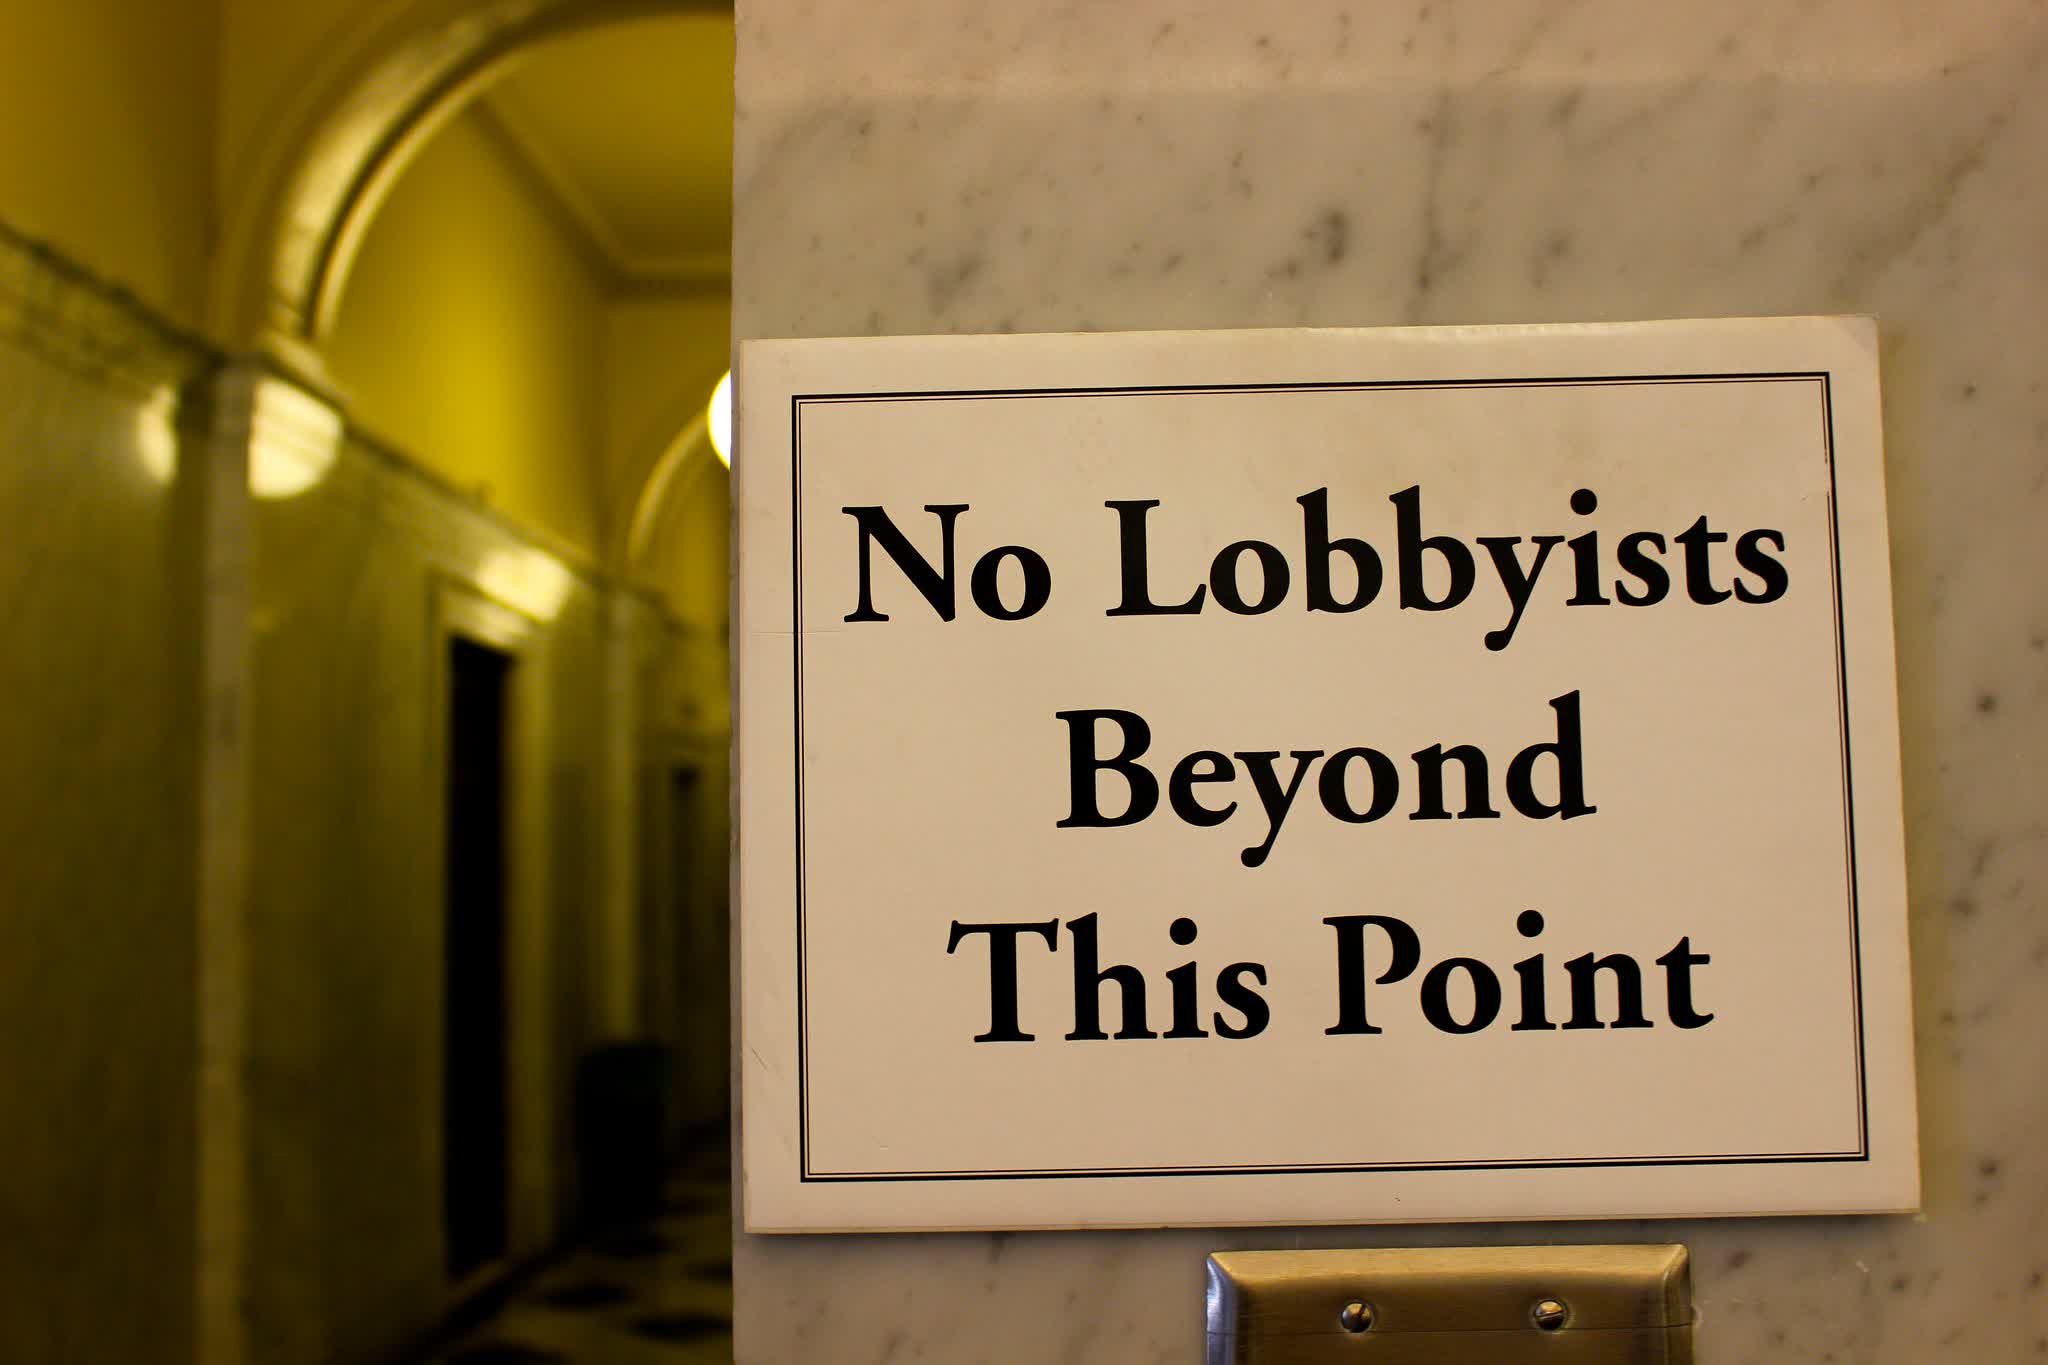 LobbyLeaks is a new EU platform to combat shady lobbying